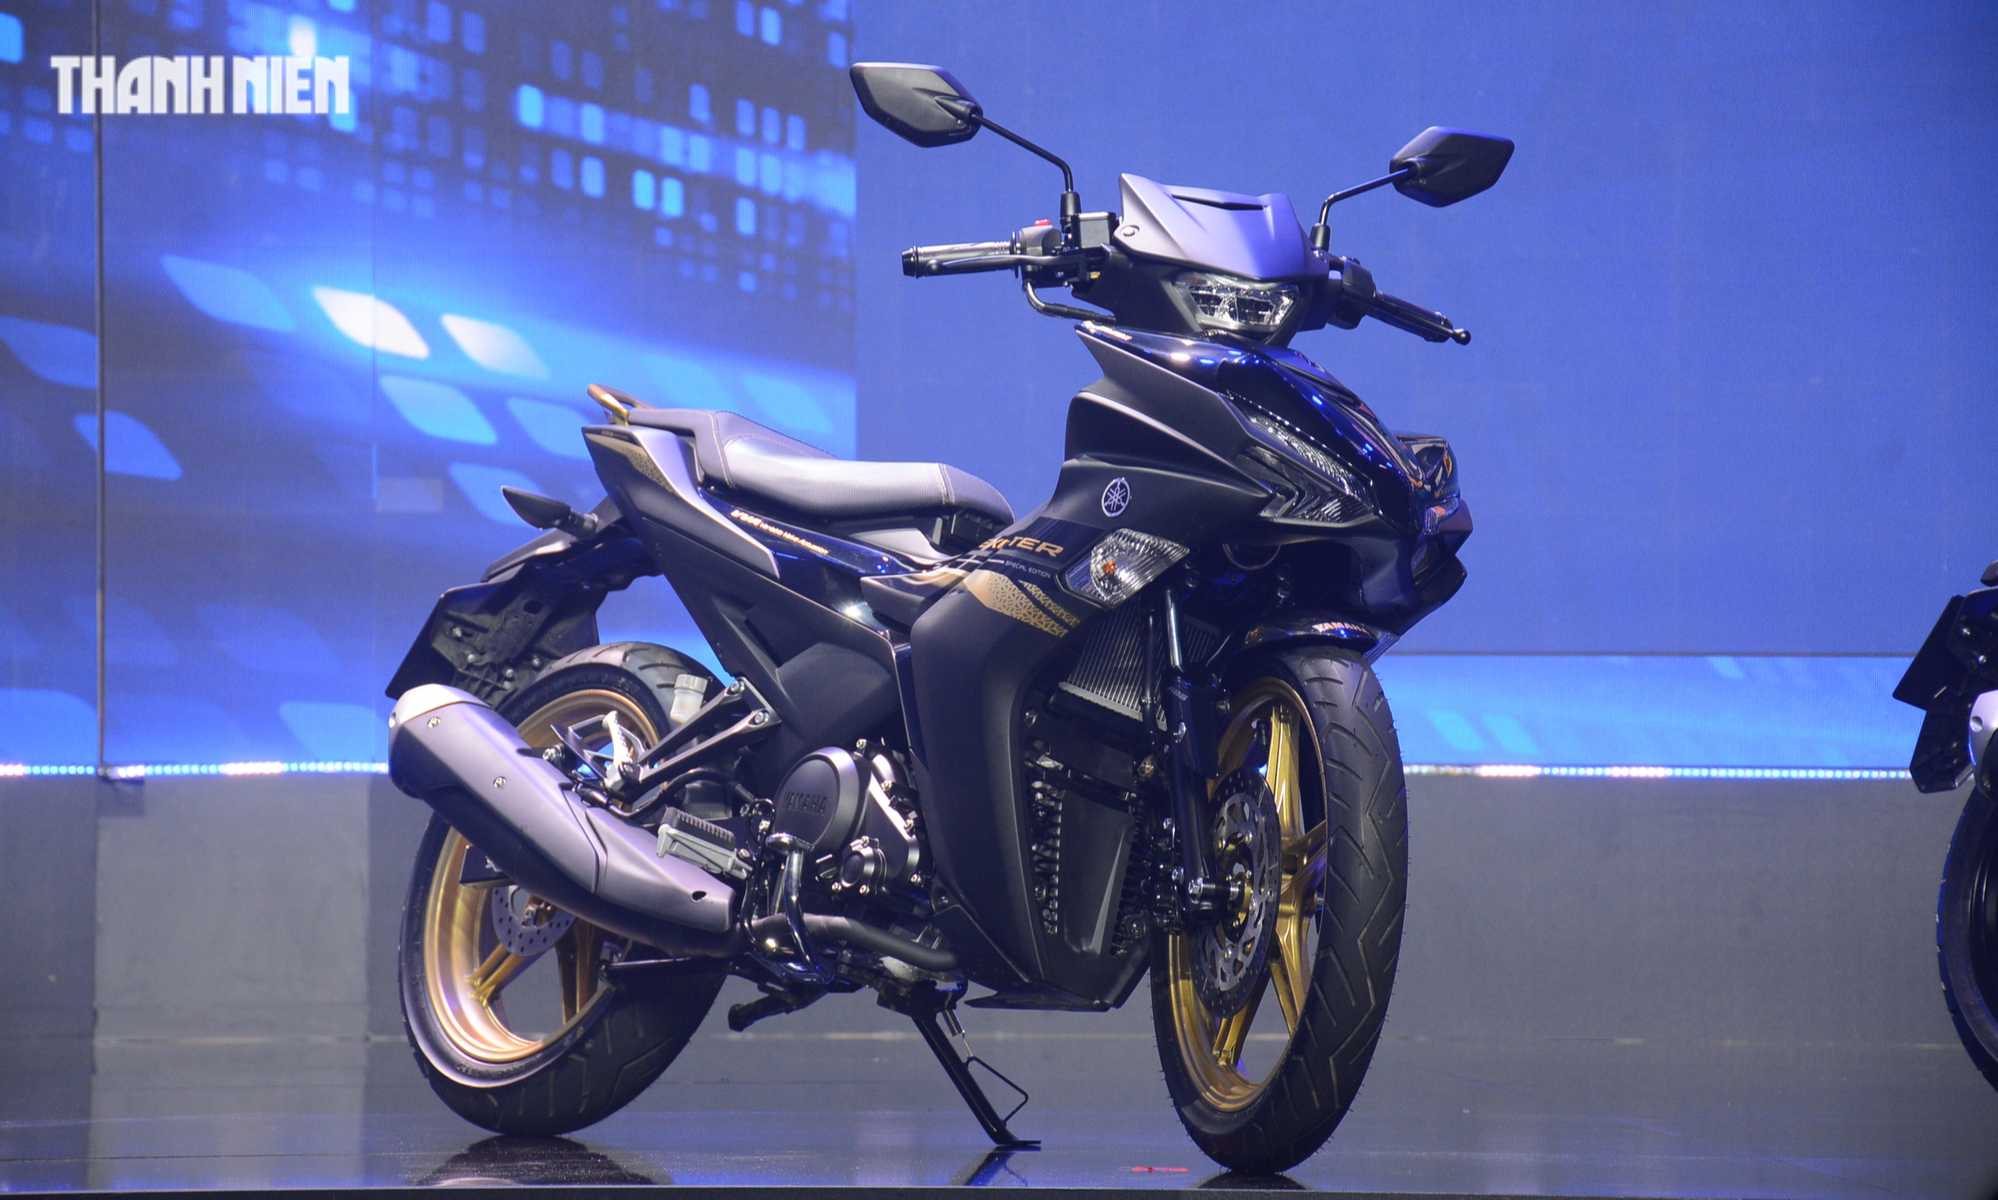 Bản nâng cấp Yamaha Exciter 155 có phanh ABS, giá từ 48 triệu đồng tại Việt Nam